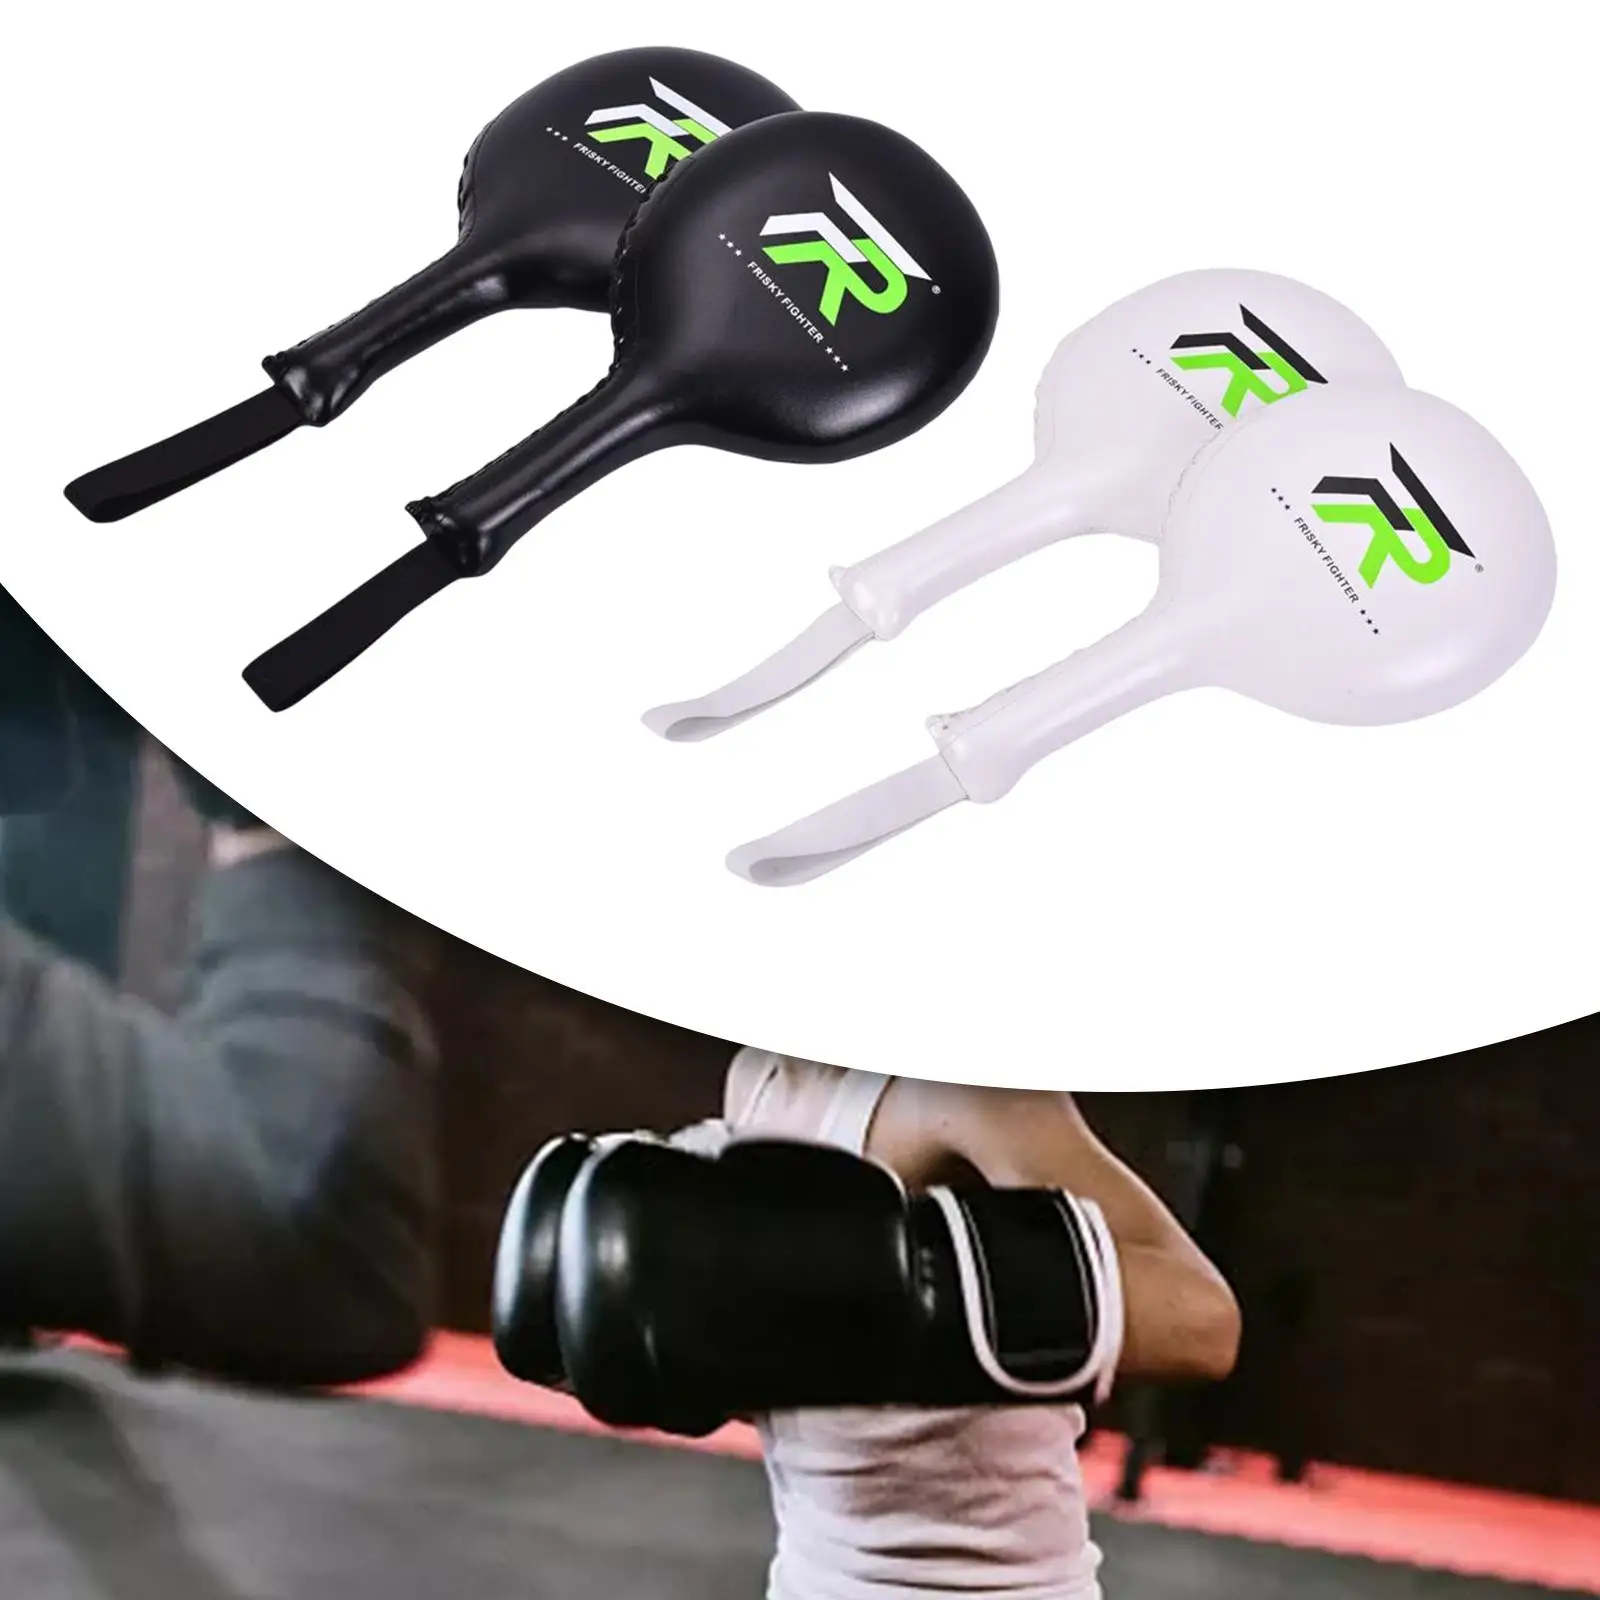 2Pcs Taekwondo Kick Pad Training Target Punching Bag Sparring Gear Punching Glove Premium Boxing Focus Mitts for Karate Mma